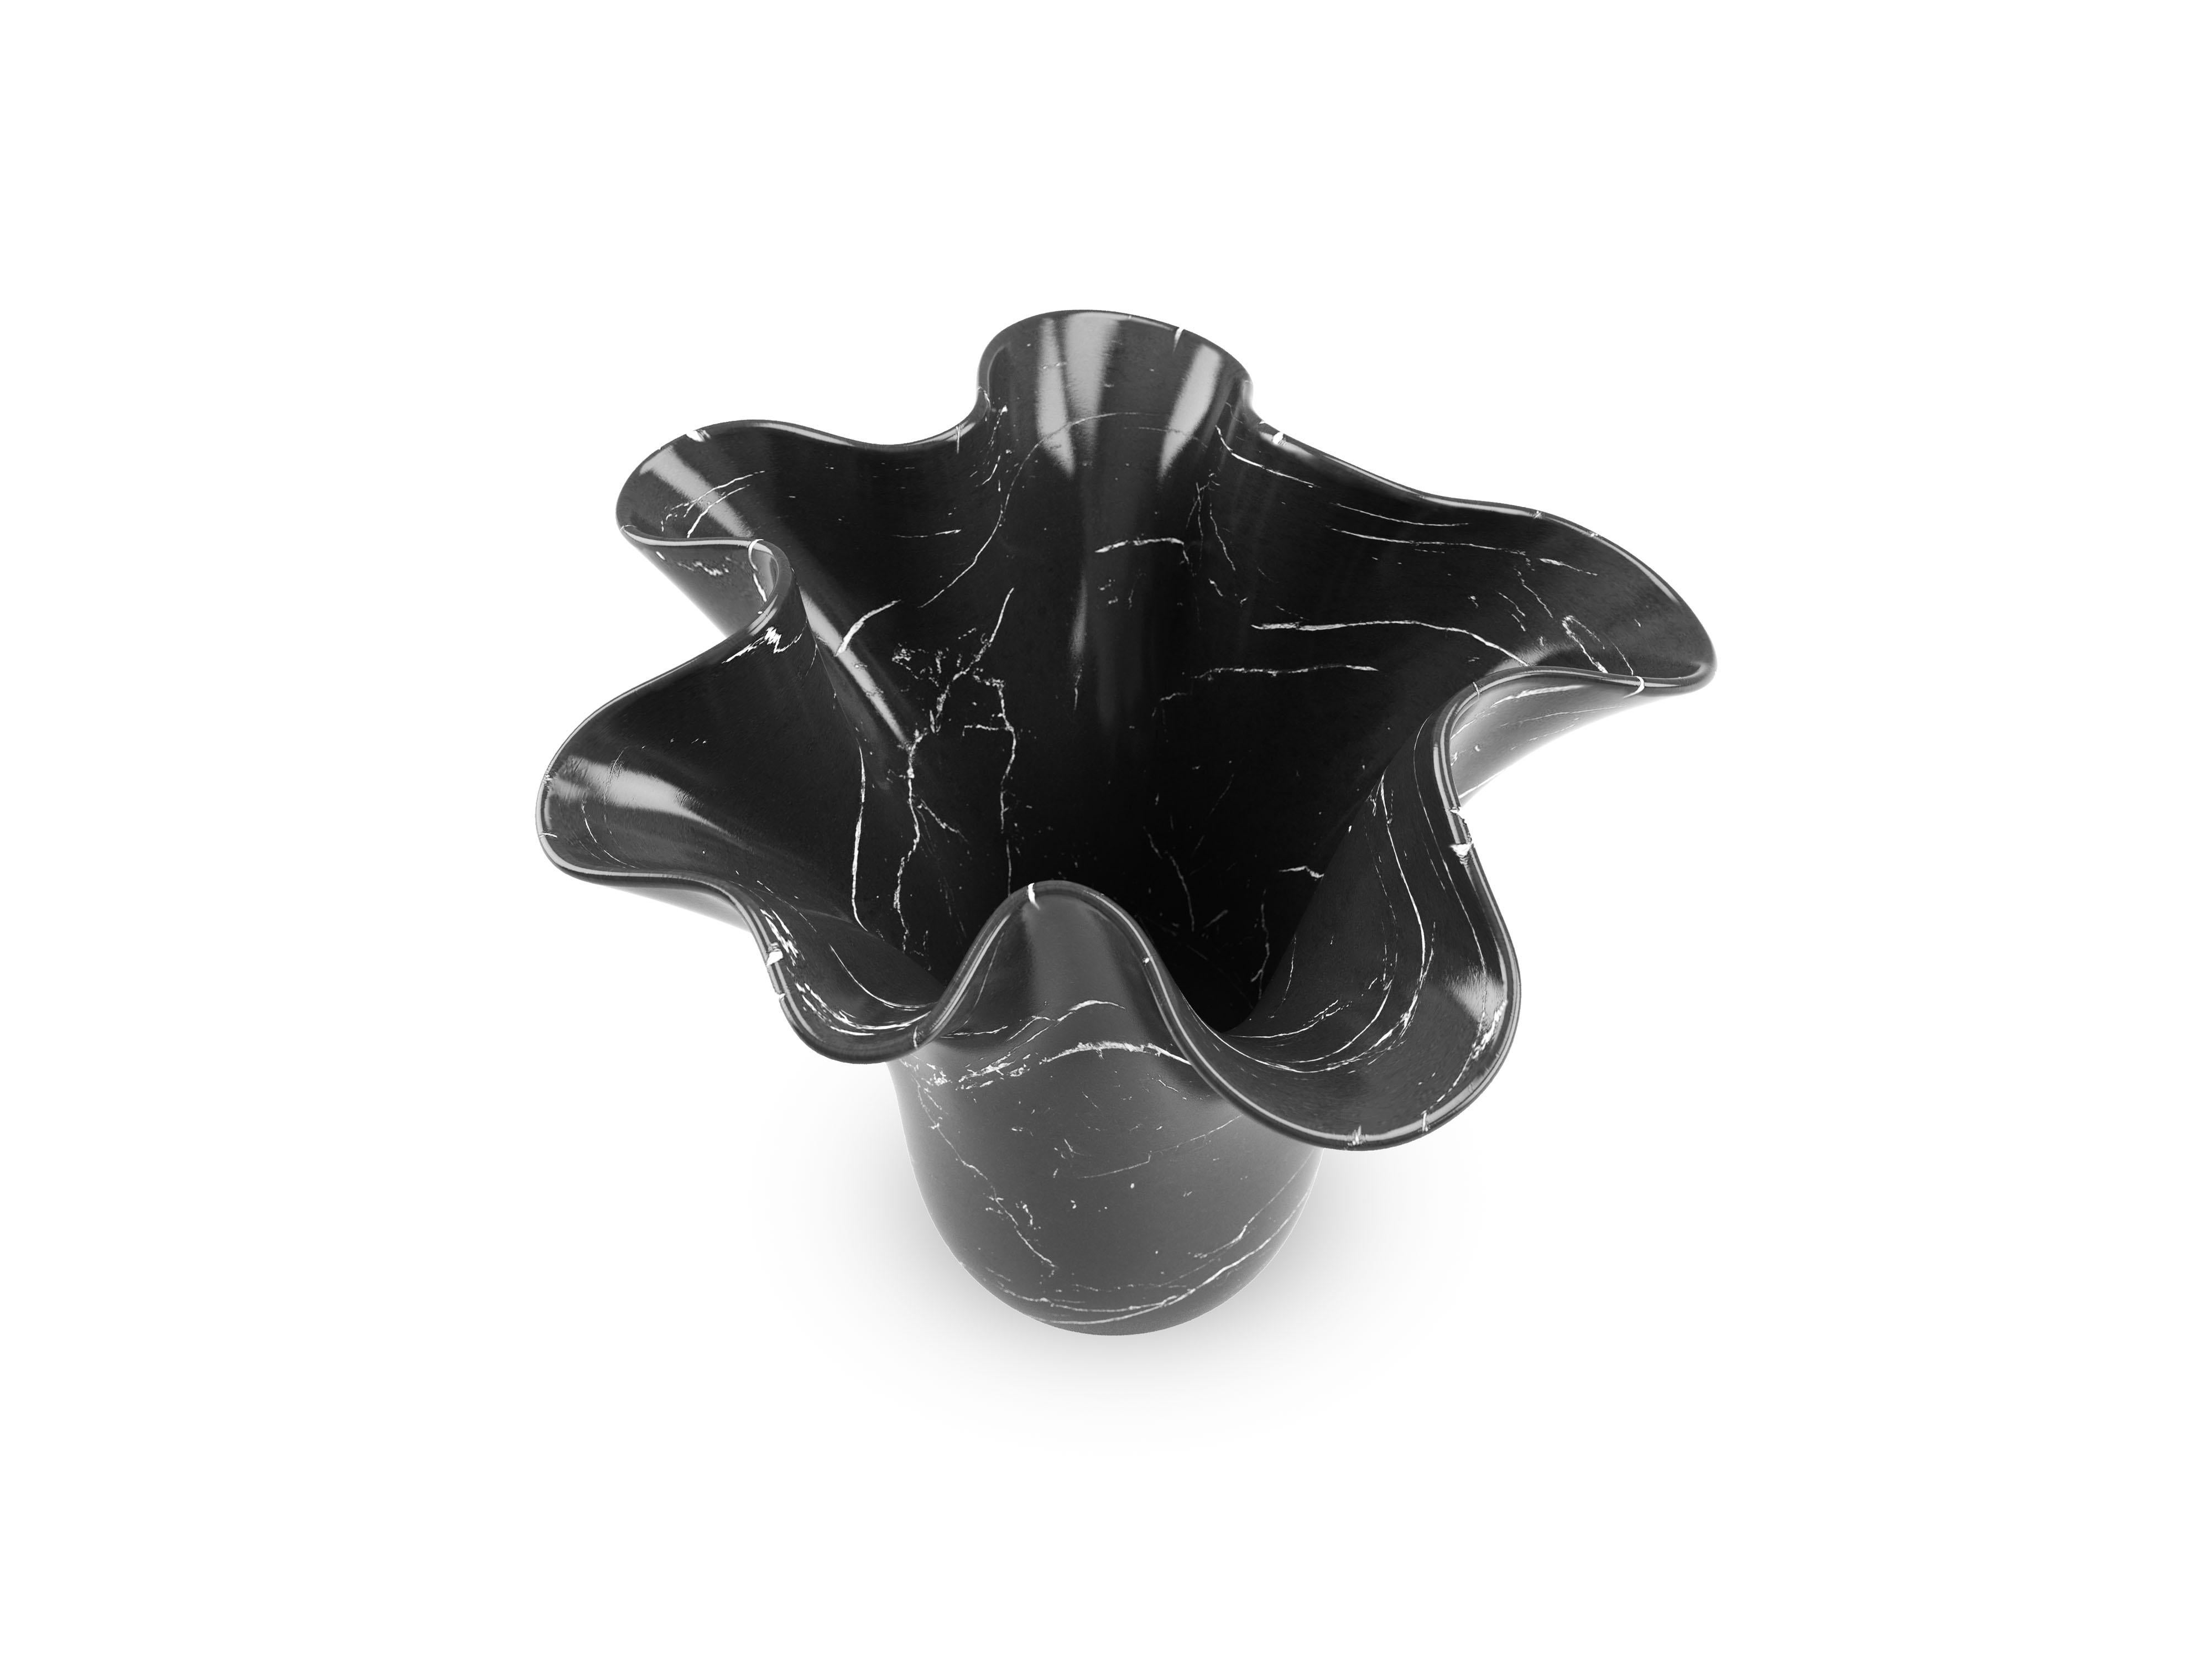 Skulpturale Vase, von Hand aus einem massiven Marquina-Block geschnitzt, polierte Oberfläche. Diese Vase ist eine verkleinerte Version der ikonischen Skulptur PV05, die vom Atelier Barberini & Gunnell entworfen und in limitierter Auflage für die